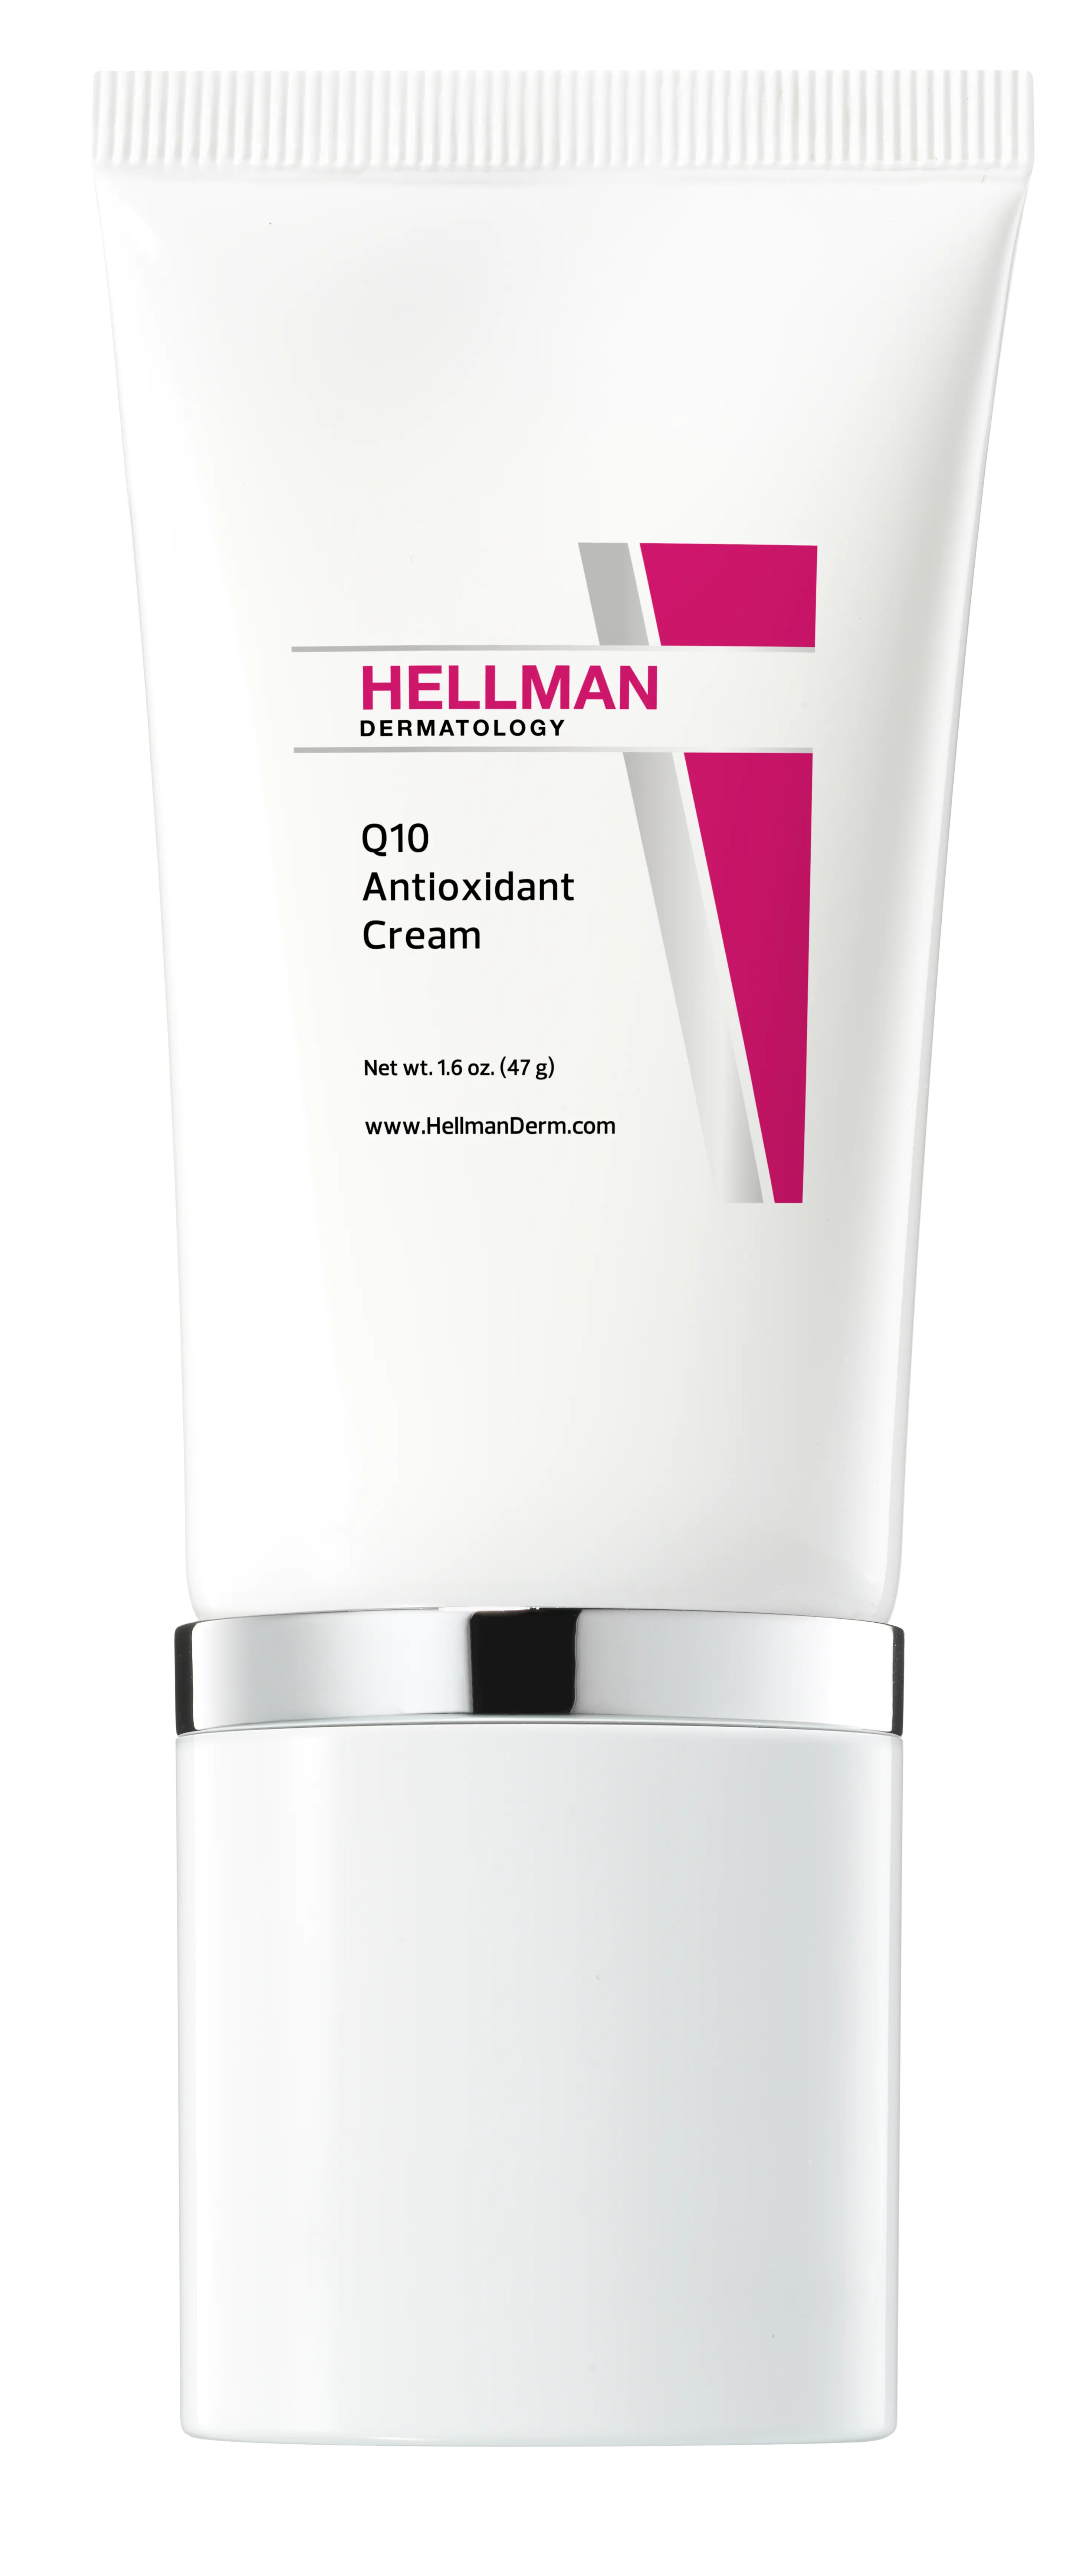 Q10 Antioxidant Cream Price: $45